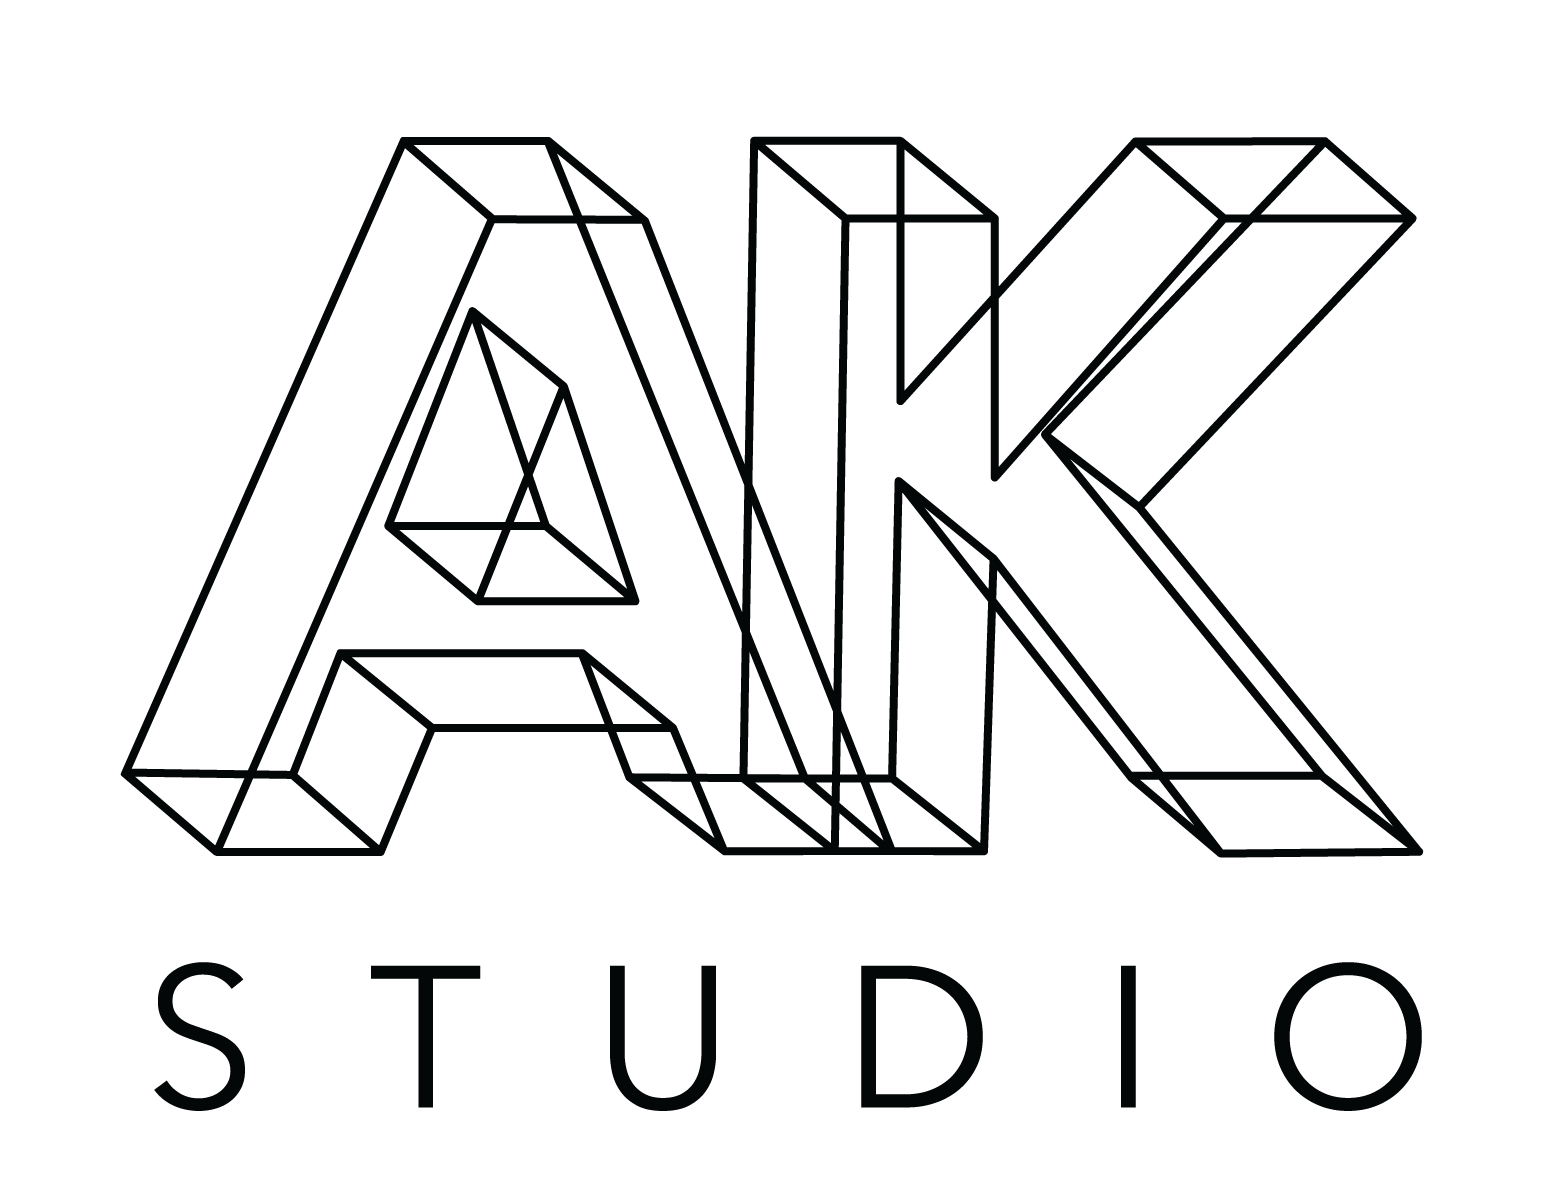 AK Studio